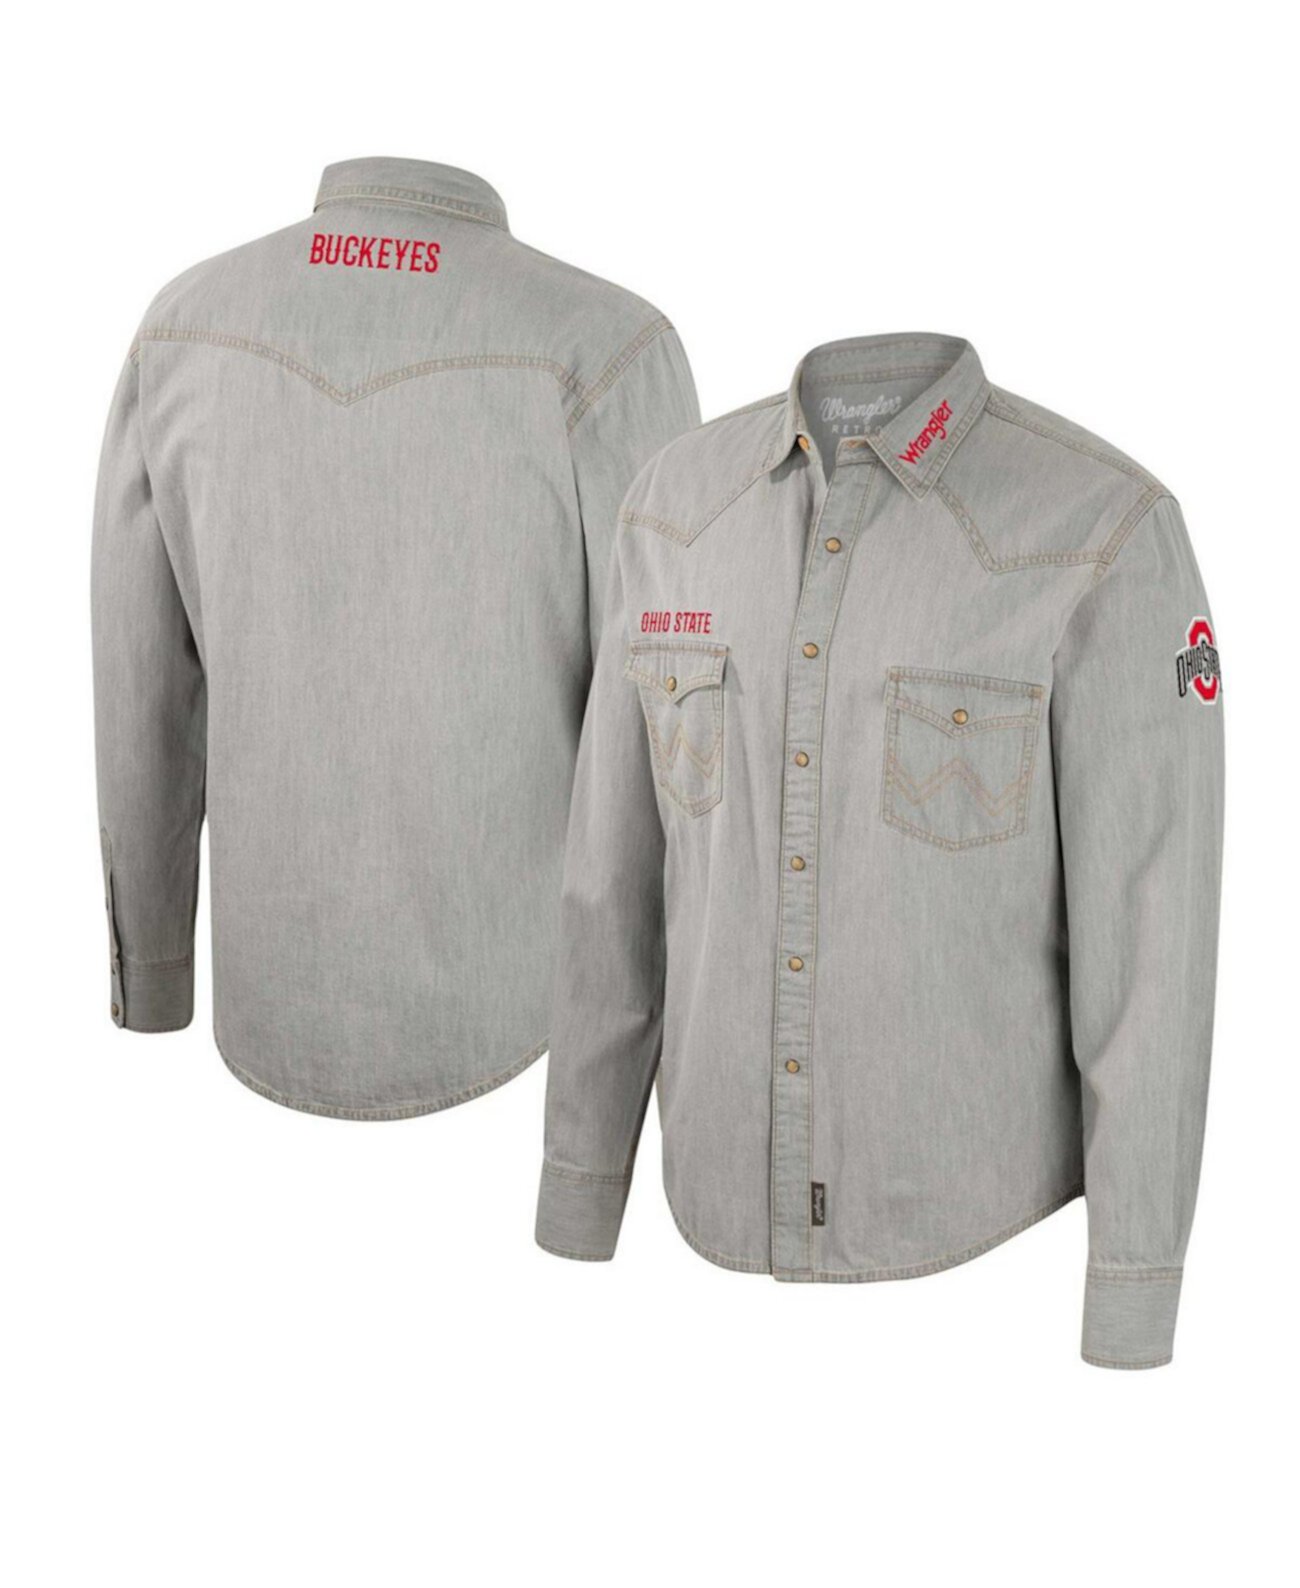 Мужская рубашка в стиле вестерн с длинными рукавами и застежкой на кнопки в ковбойском стиле x Wrangler Grey Ohio State Buckeyes Colosseum